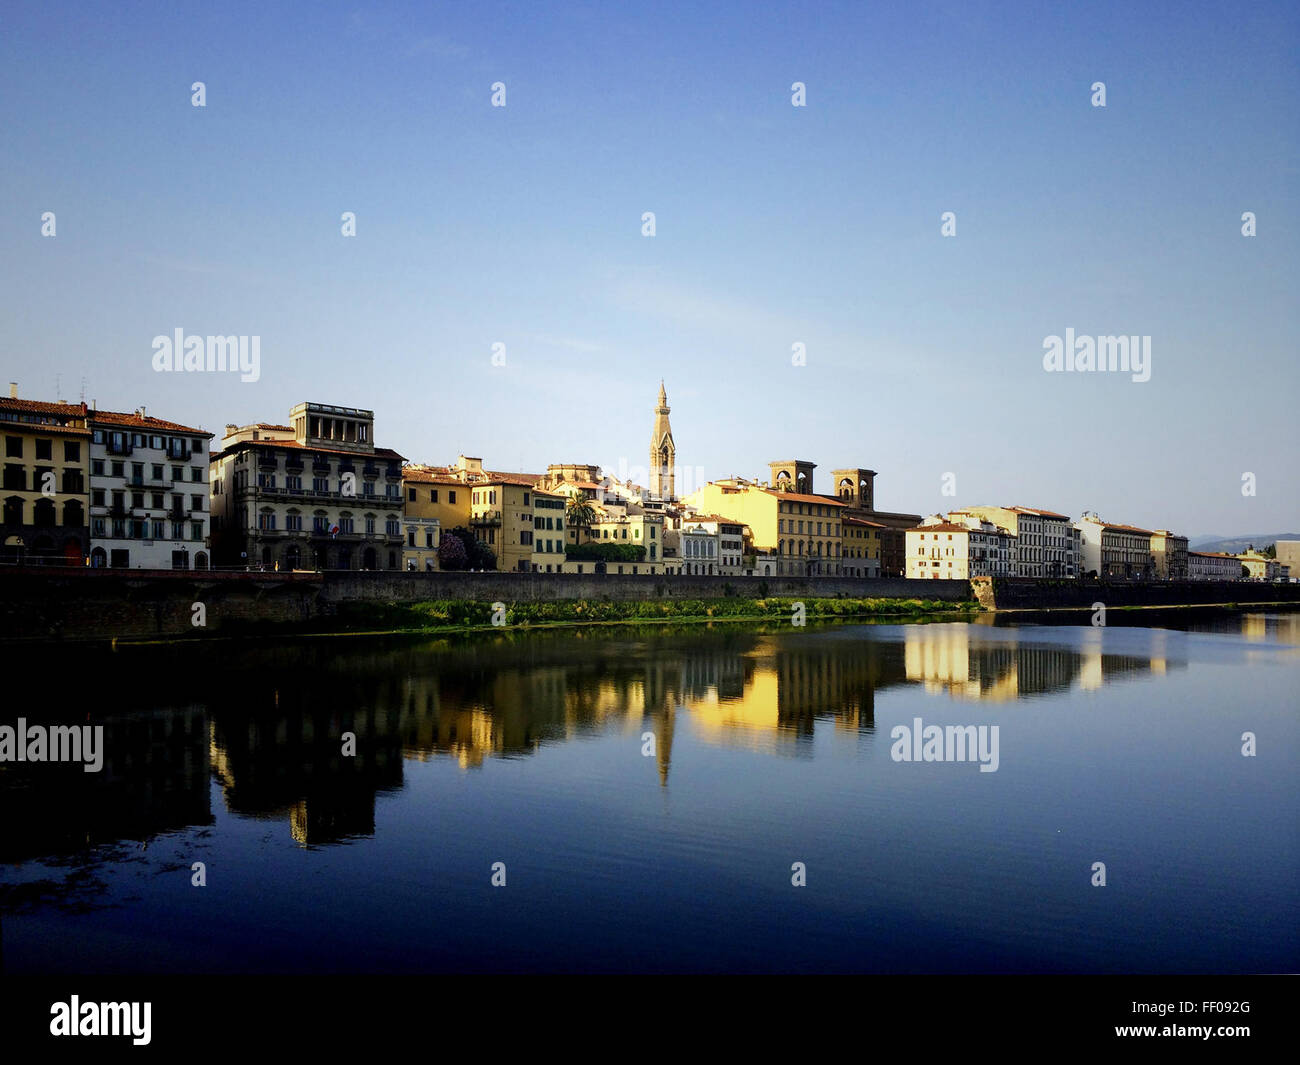 City Buildings by River City Buildings by River Stock Photo